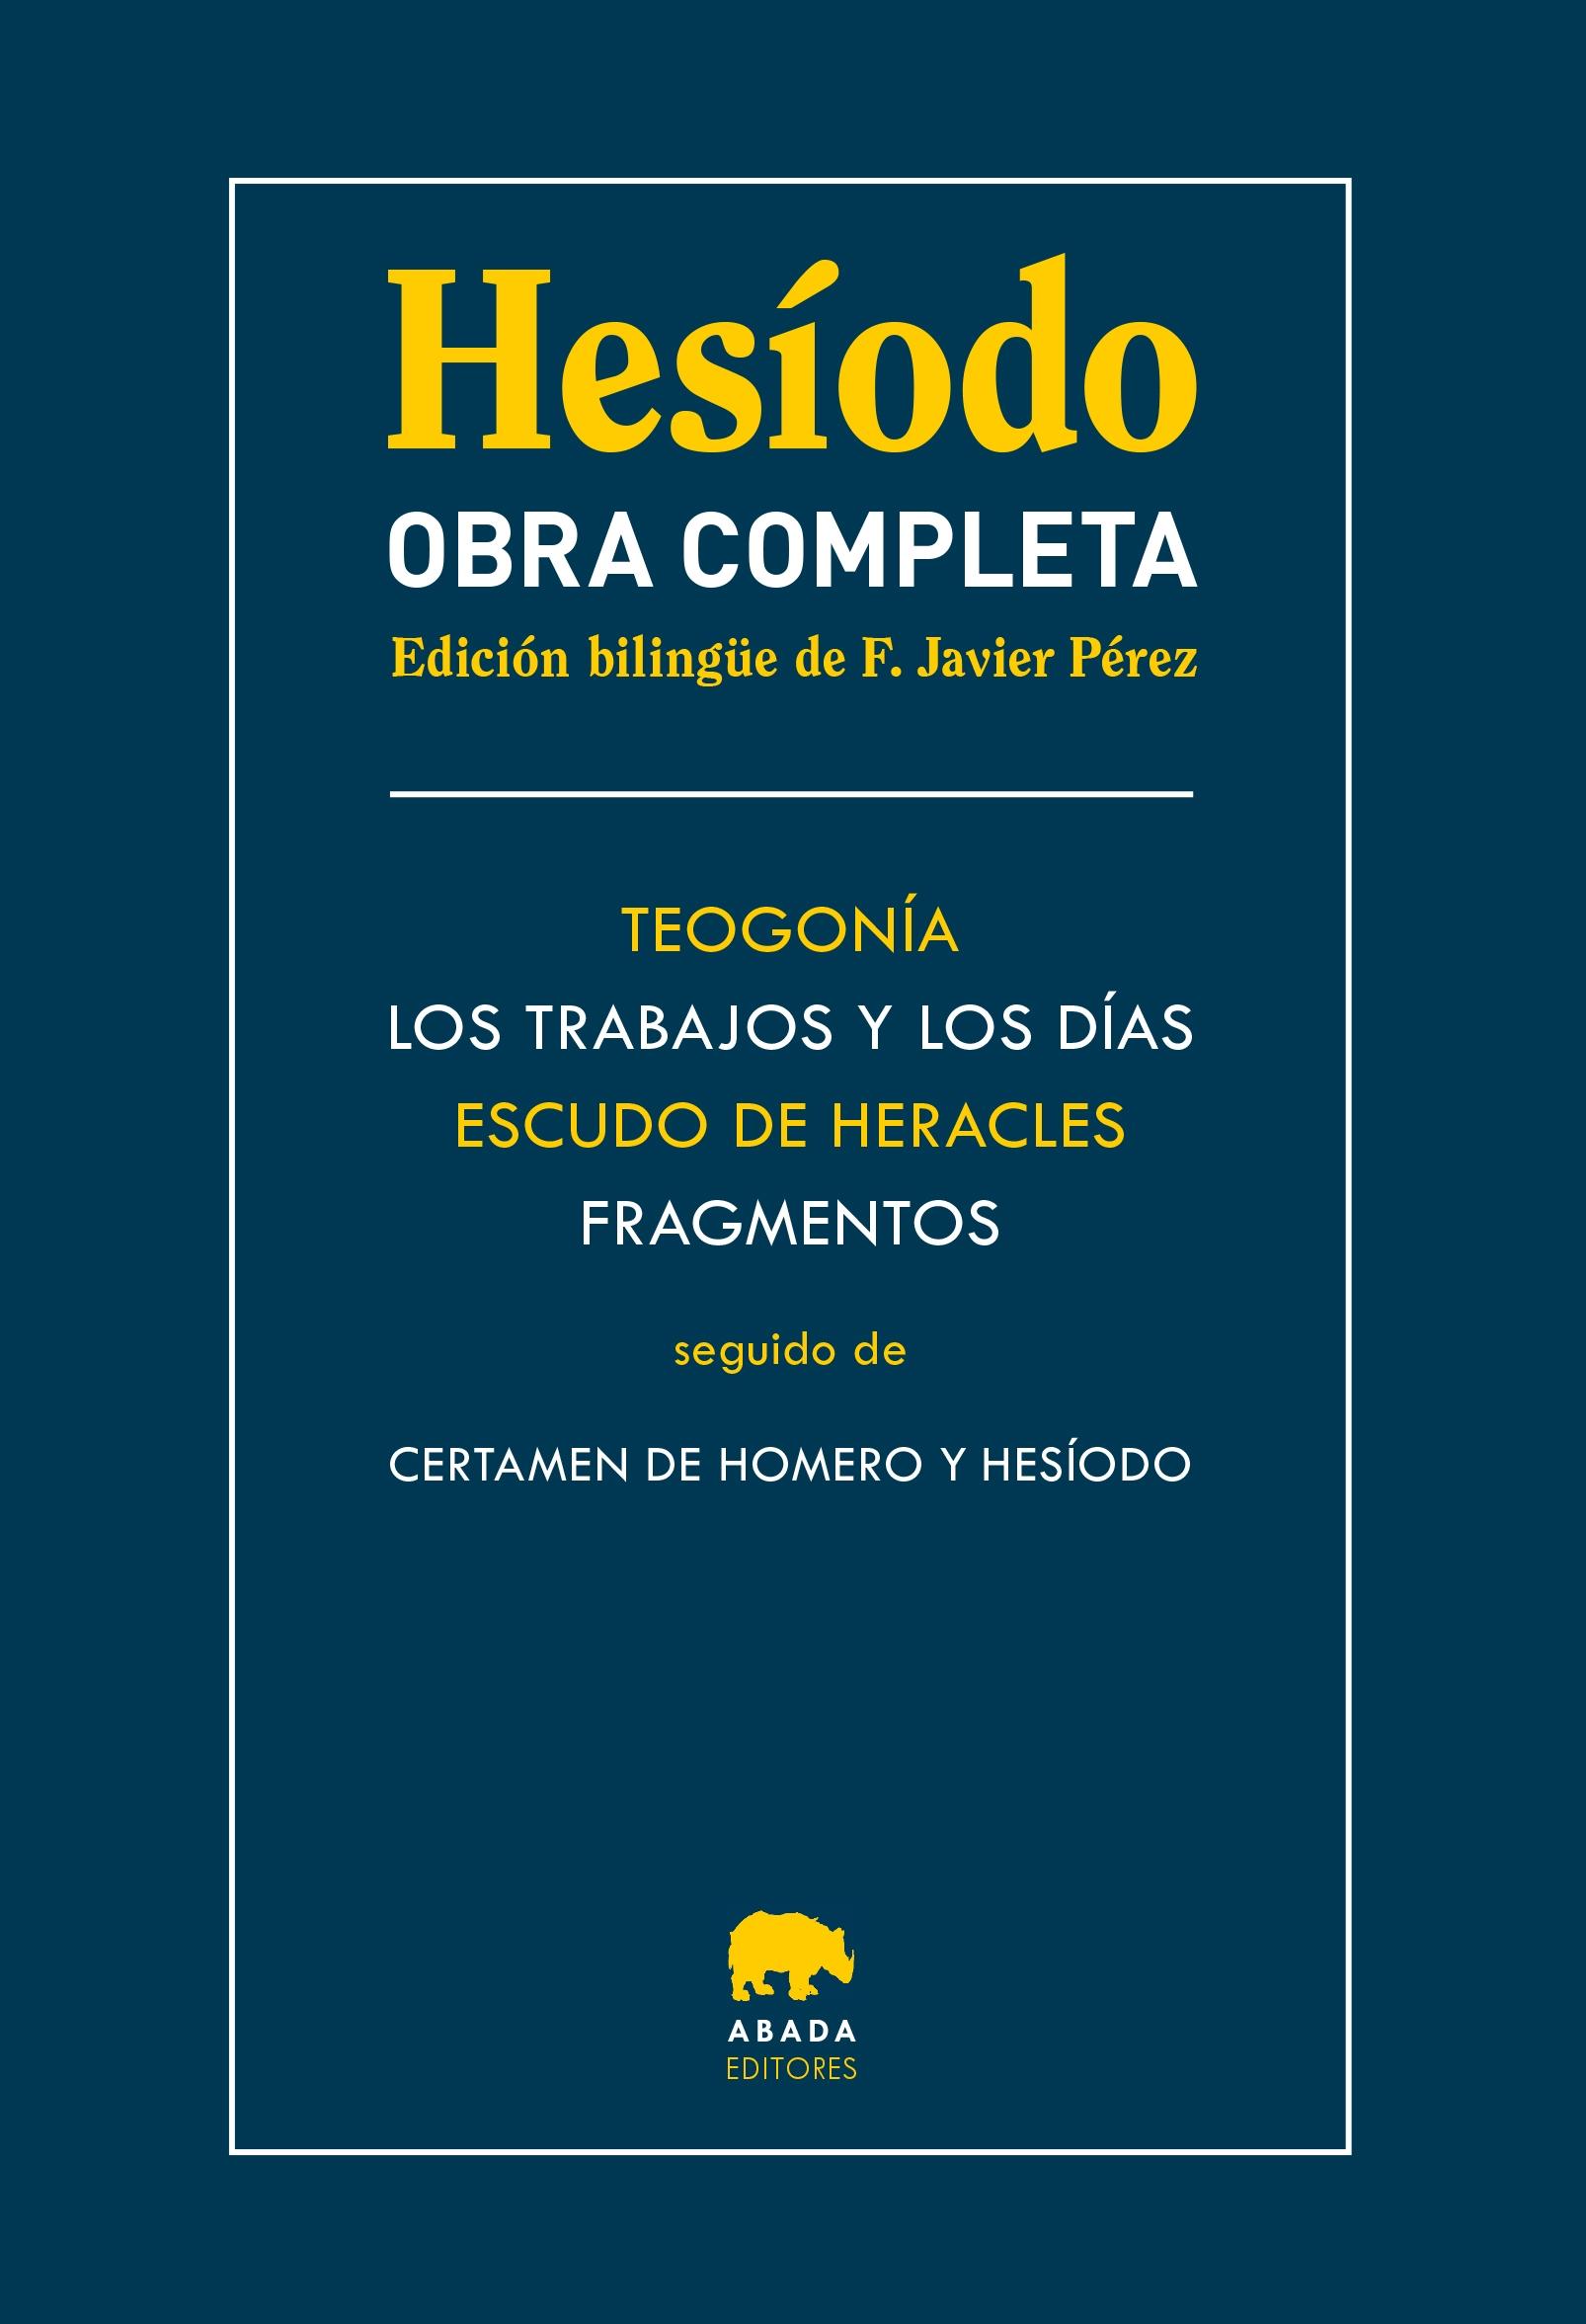 OBRA COMPLETA "TEOGONIA / LOS TRABAJOS Y LOS DIAS / ESCUDO DE HERACLES / FRAGMENTOS "